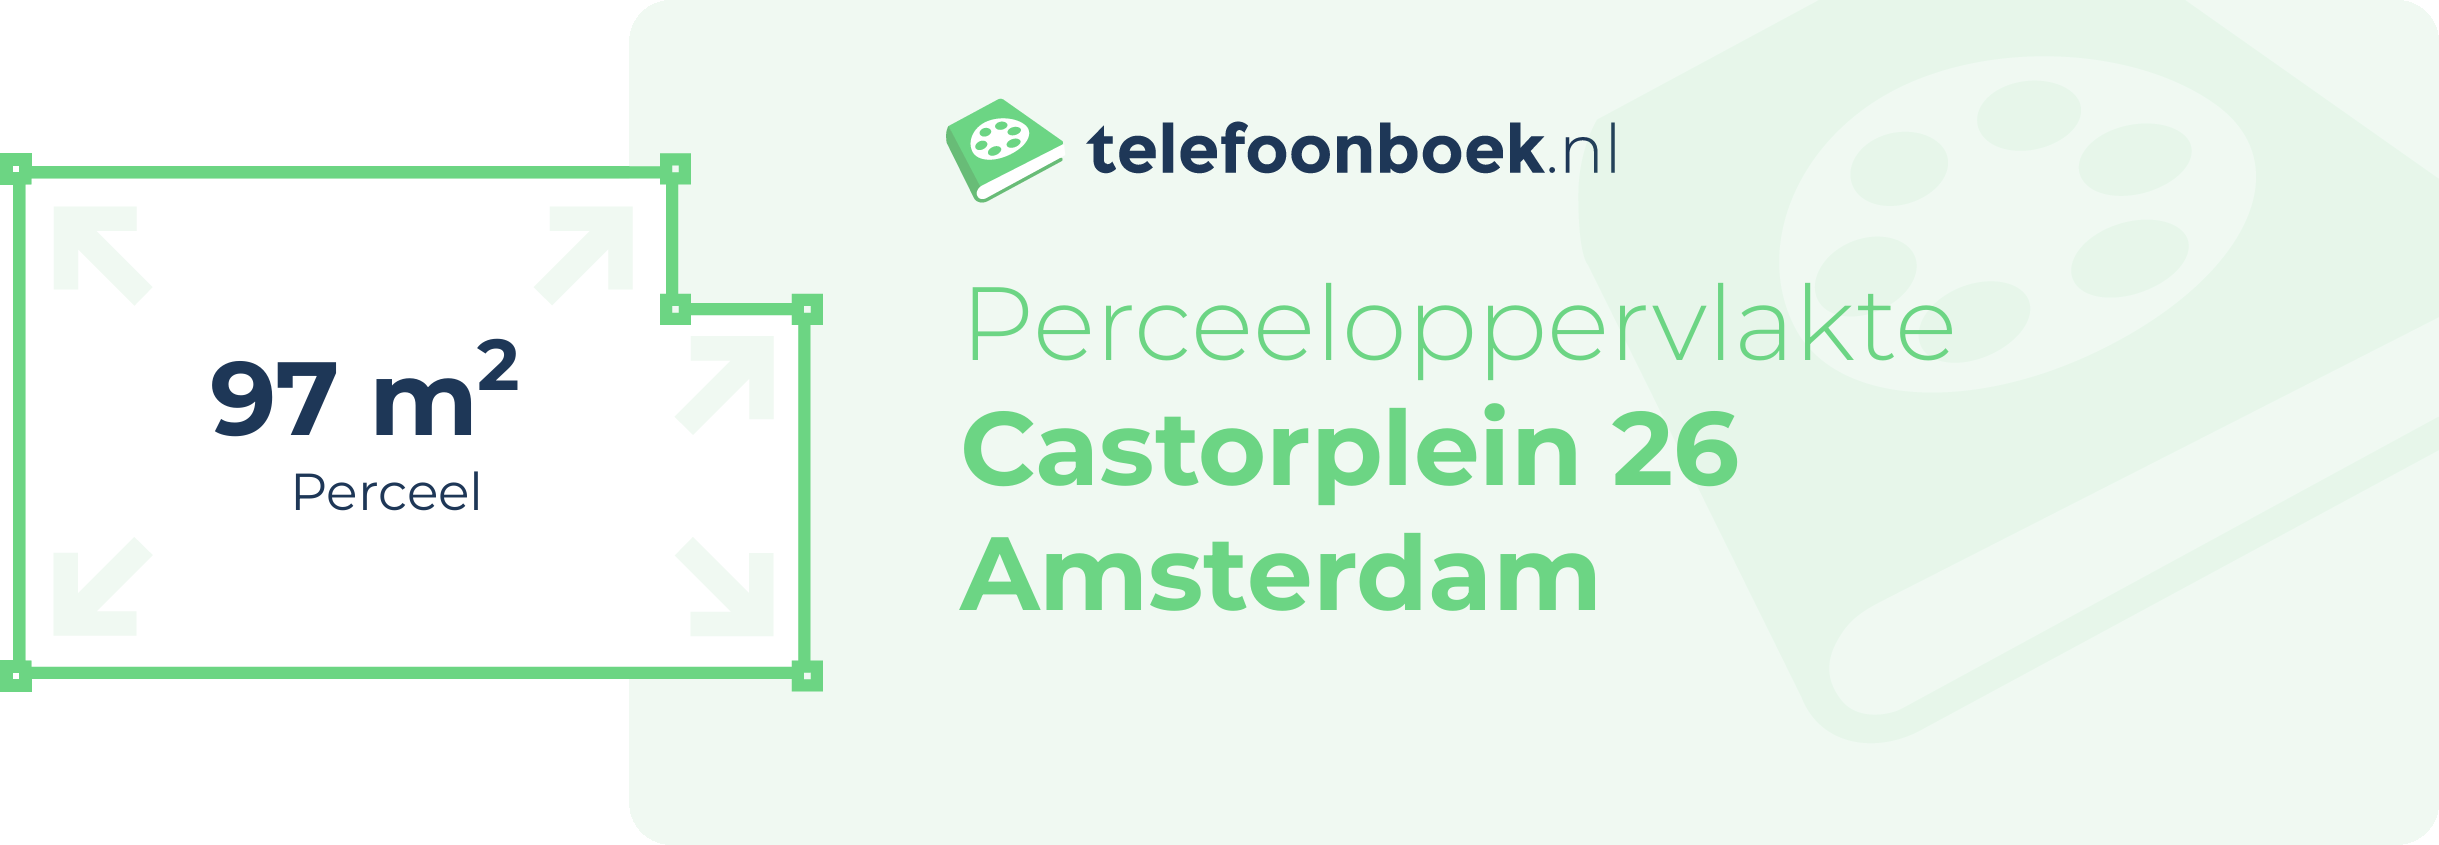 Perceeloppervlakte Castorplein 26 Amsterdam